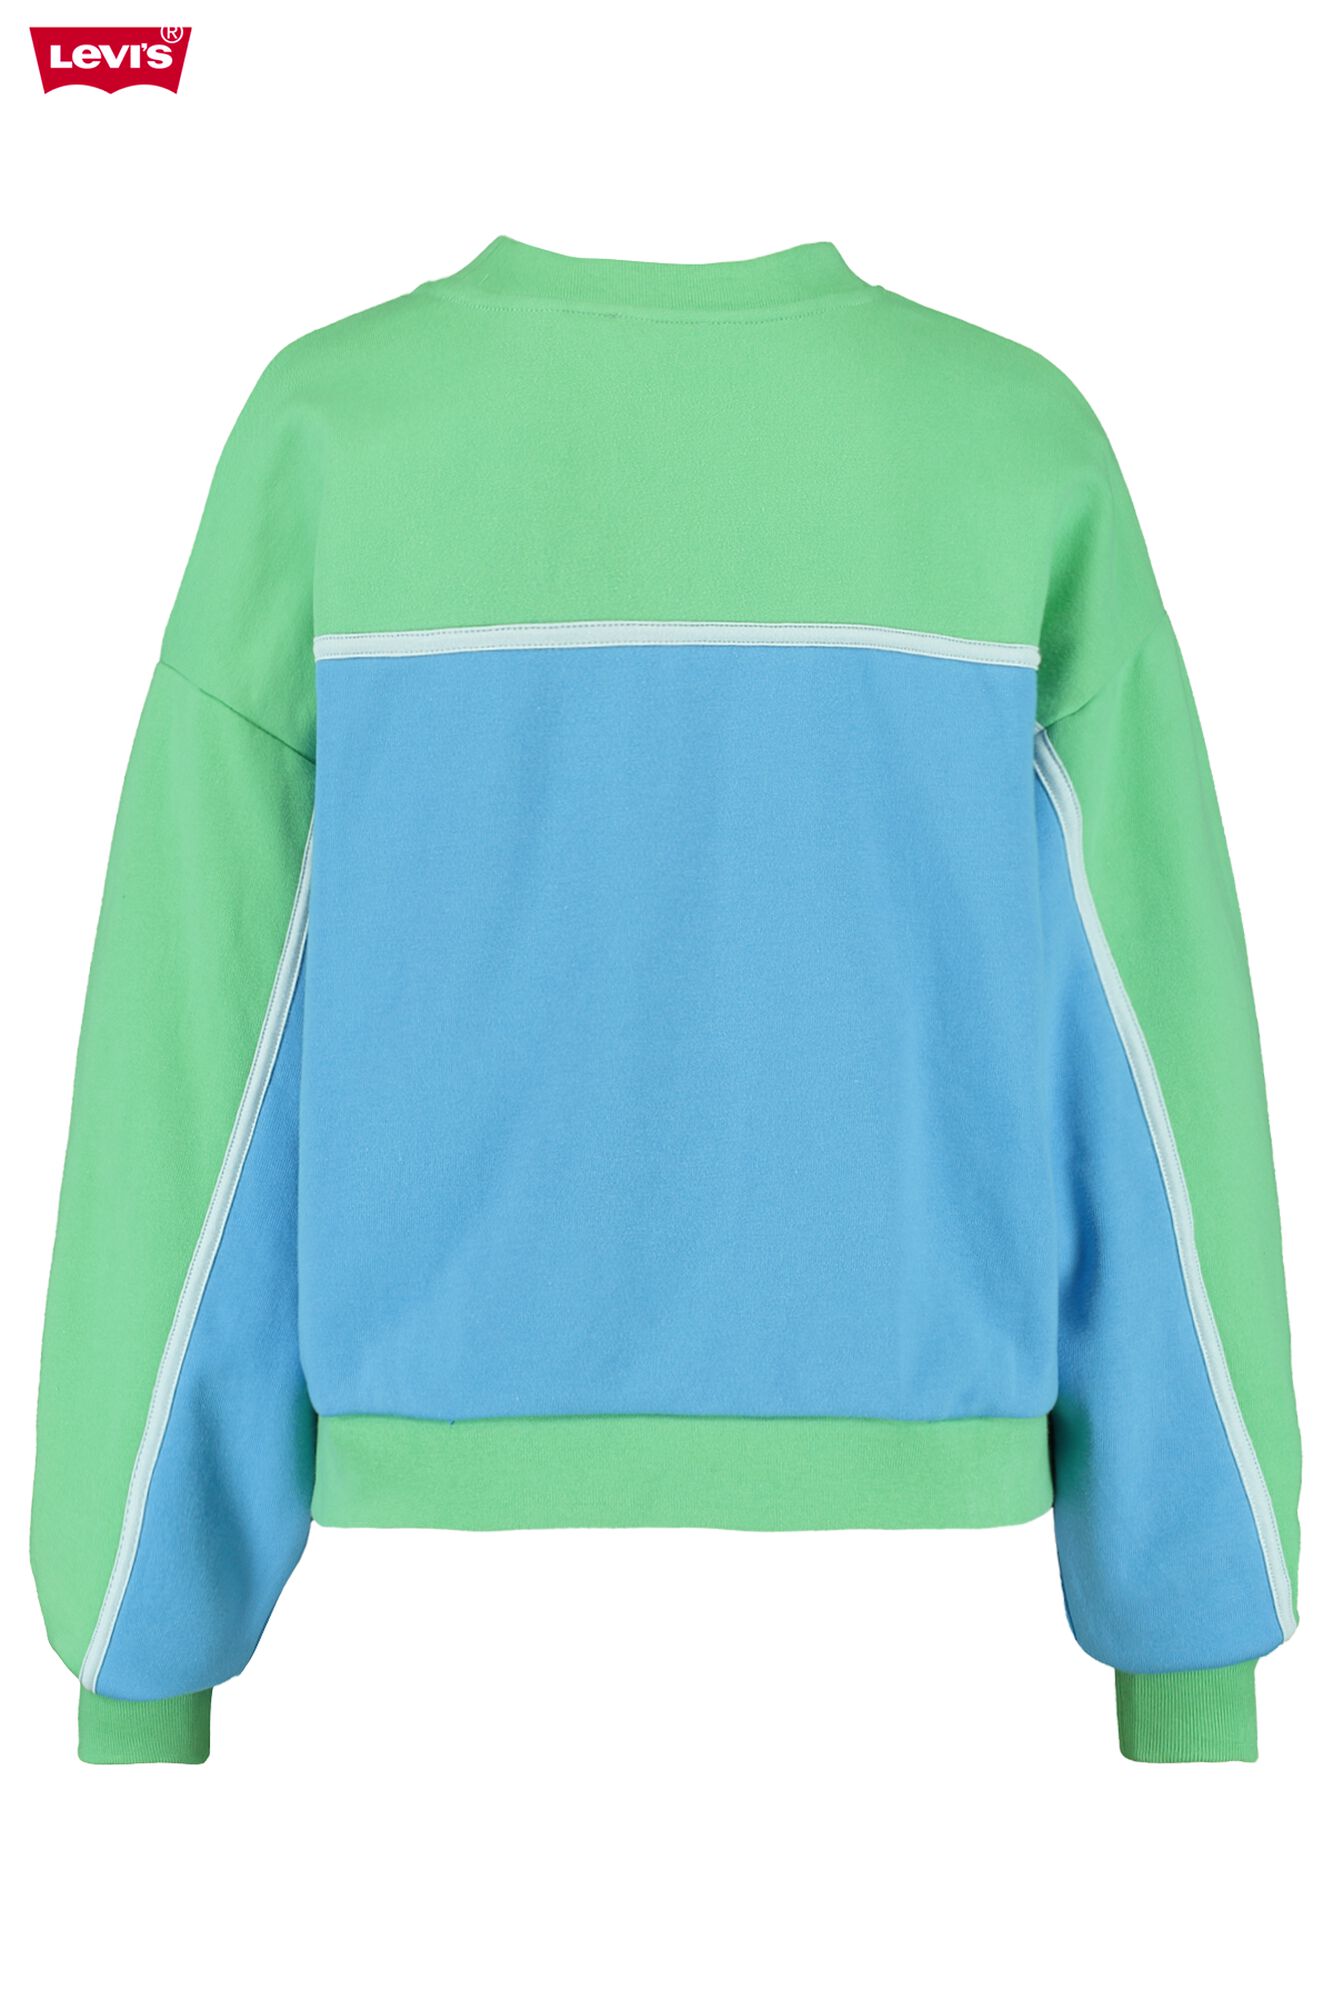 Women Sweater Levi's Celeste Green Buy Online